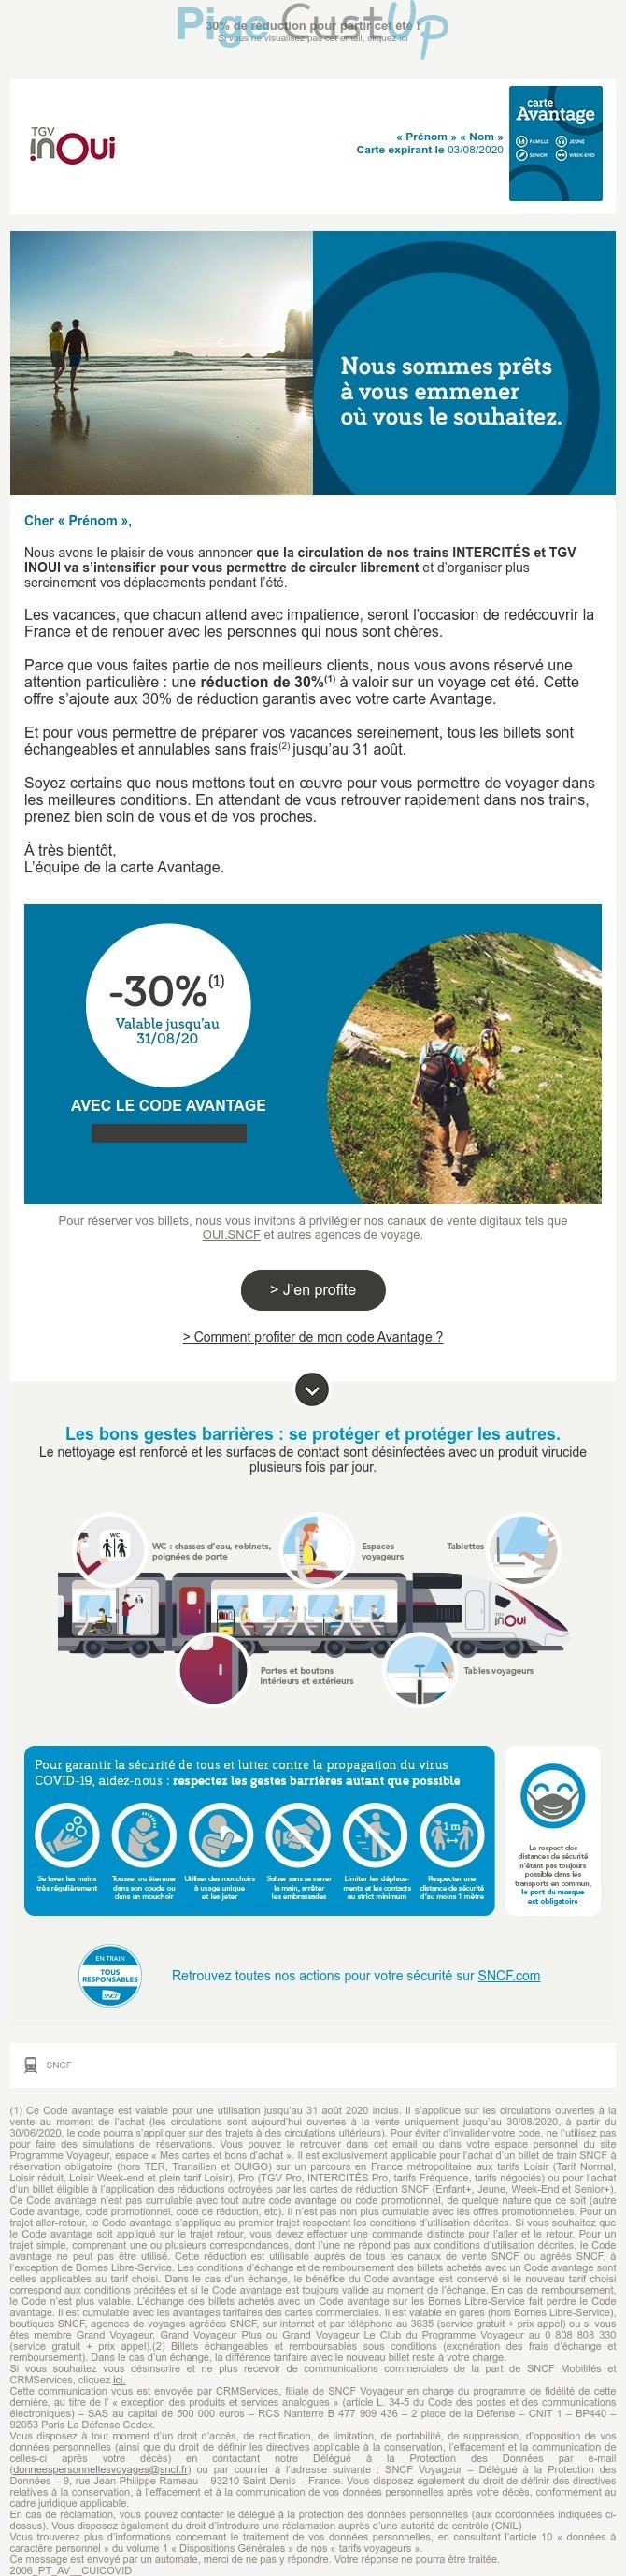 Exemple de Type de media  e-mailing - SNCF - Marketing fidélisation - Incitation au réachat - Marketing Acquisition - Ventes flash, soldes, demarque, promo, réduction